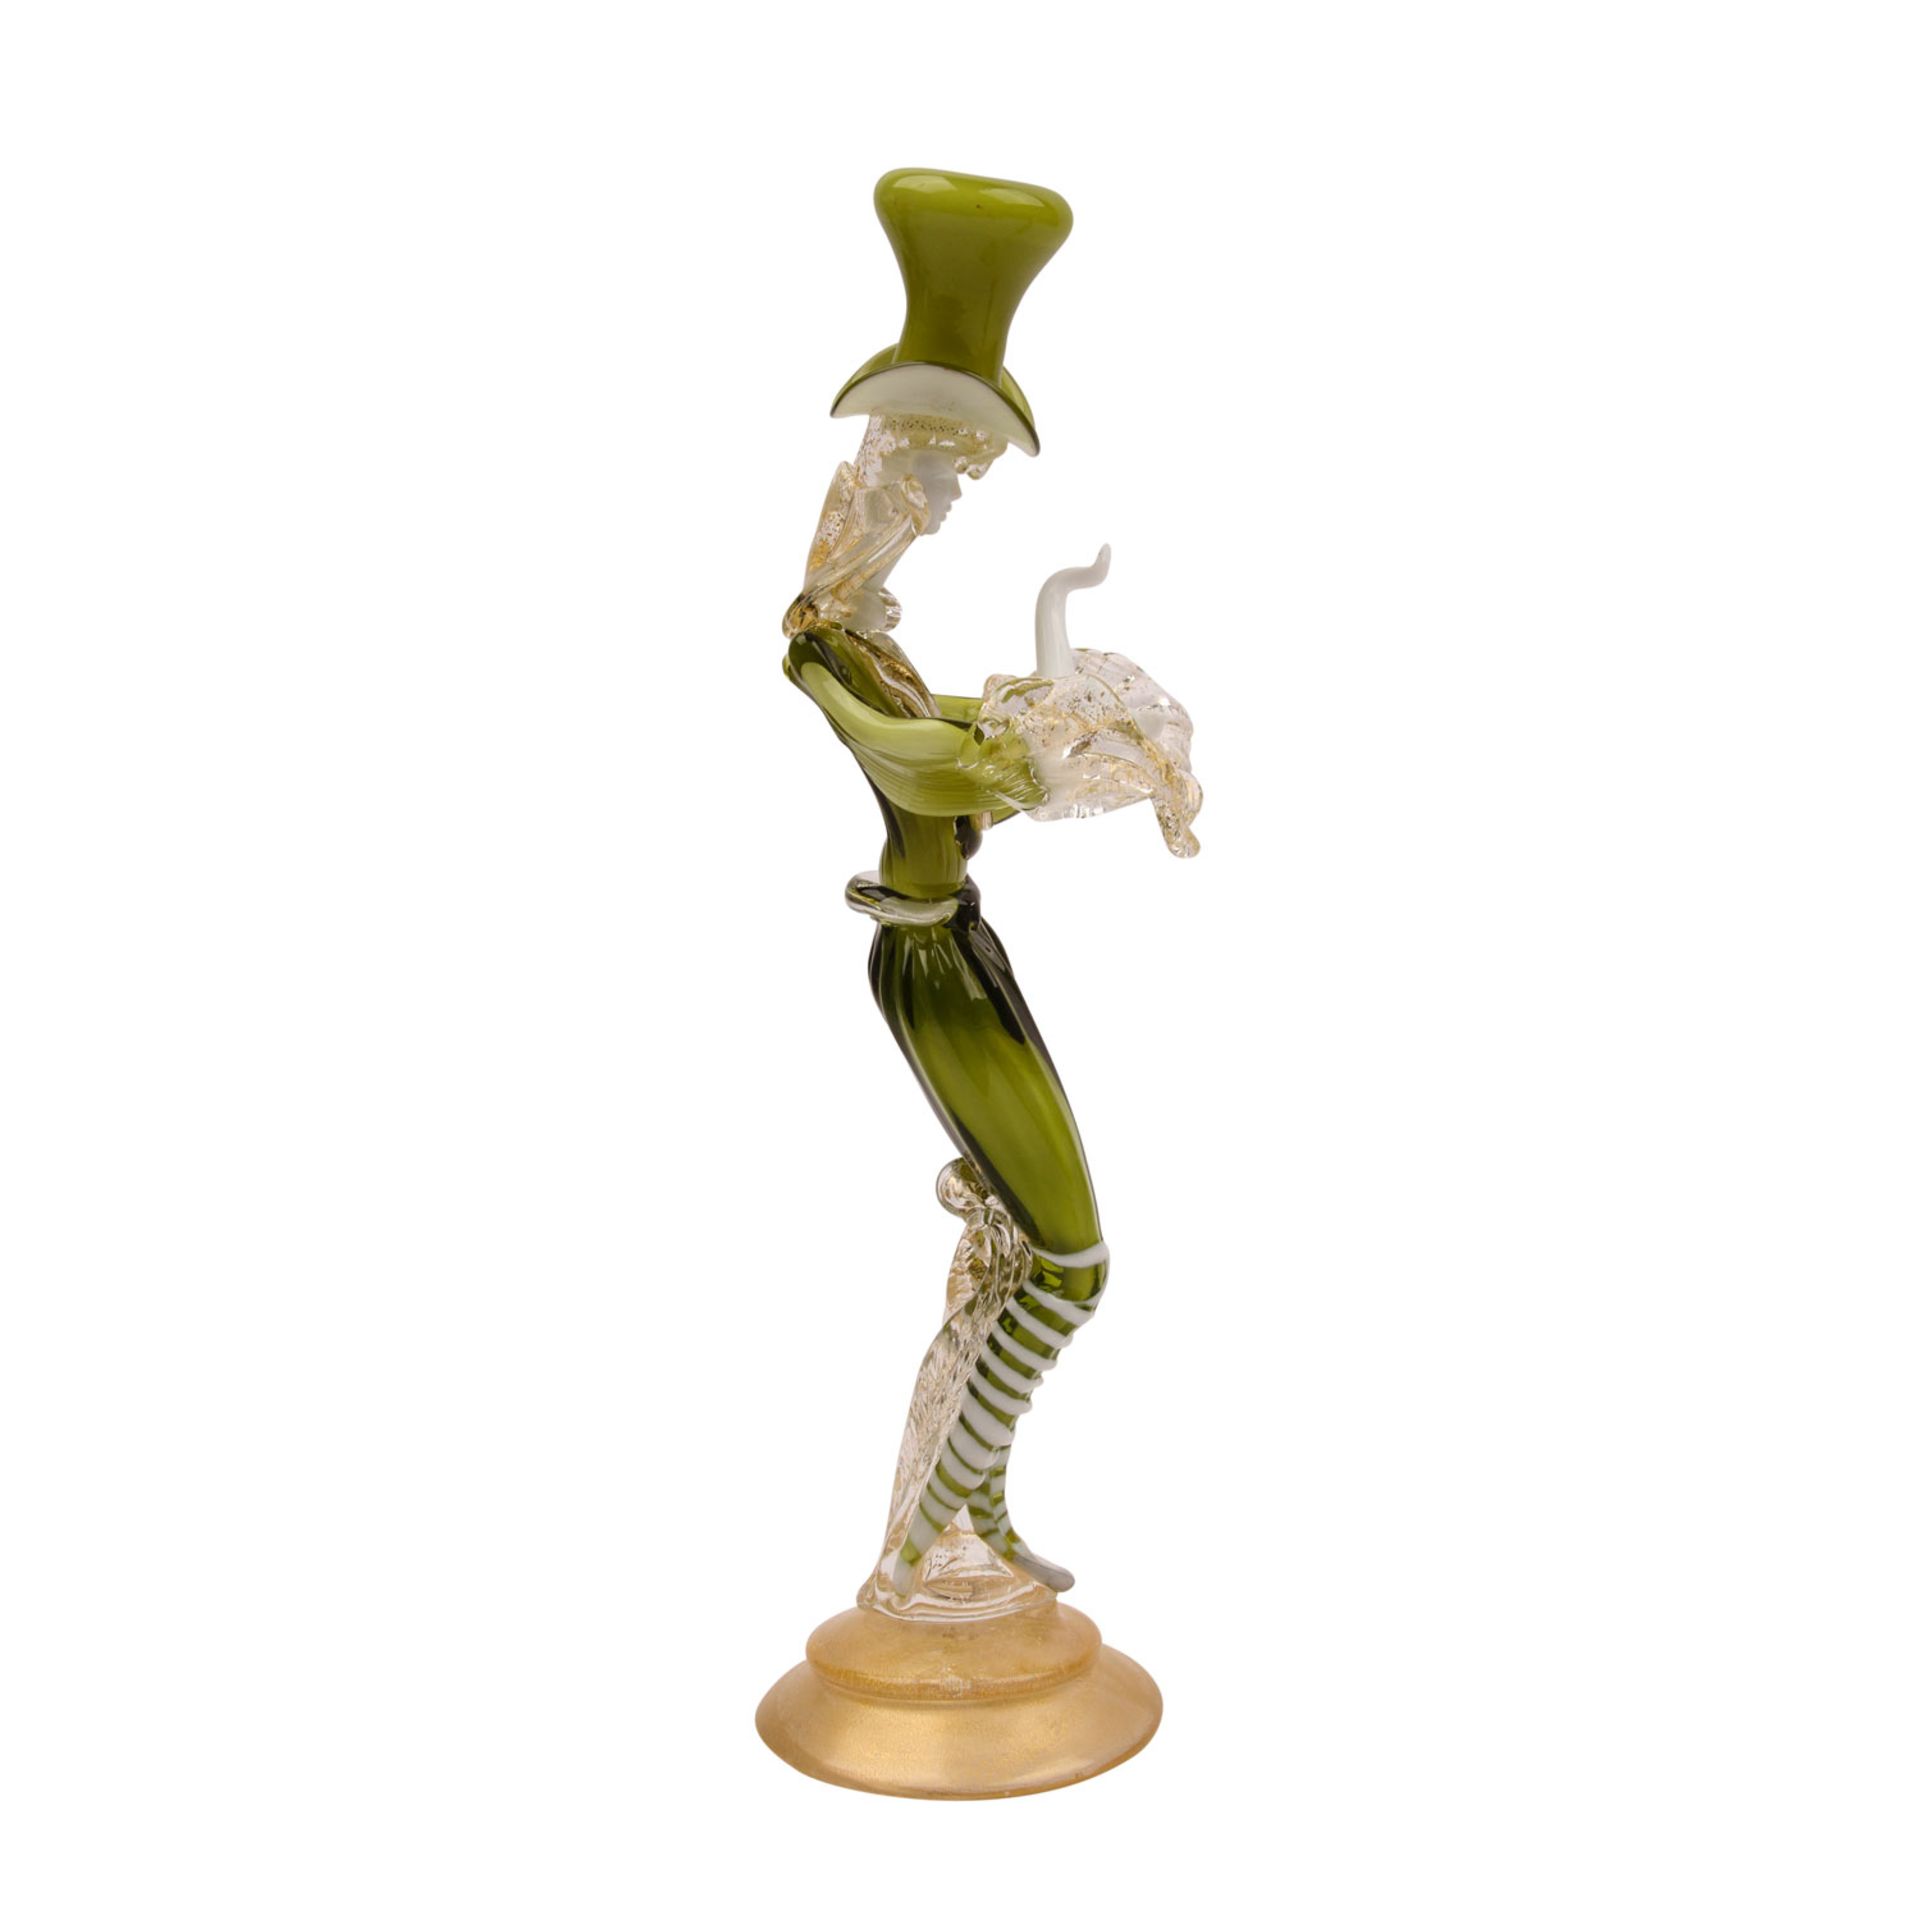 MURANO Ars Vetraria. Glasfigur, 20. Jh..Langgestreckte Figur mit einem grünen Kostüm und Zylinder - Image 4 of 6